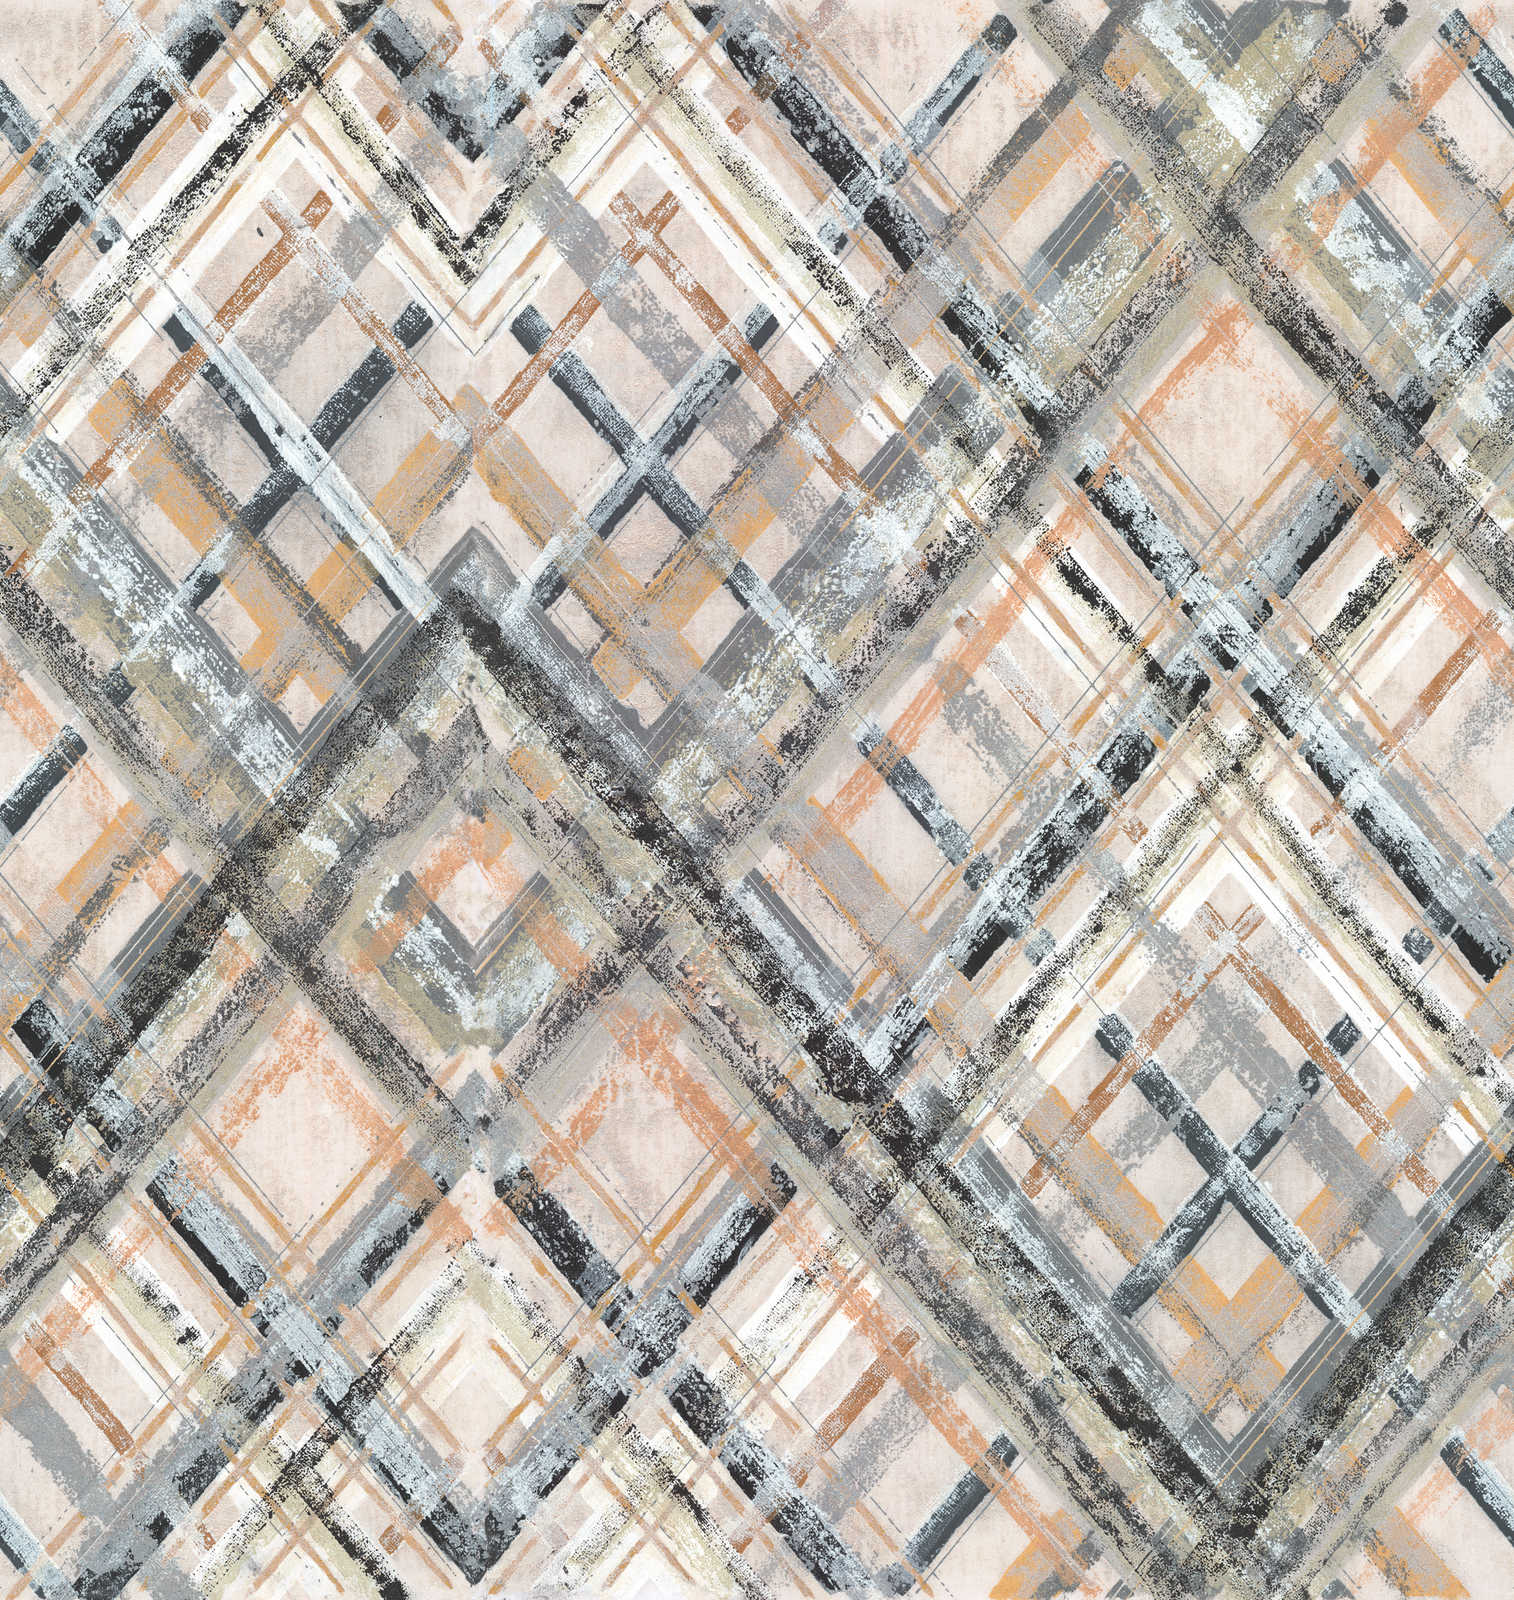             Abstrakte Vliestapete mit geometrischem Muster – Grau, Beige, Blaugrau
        